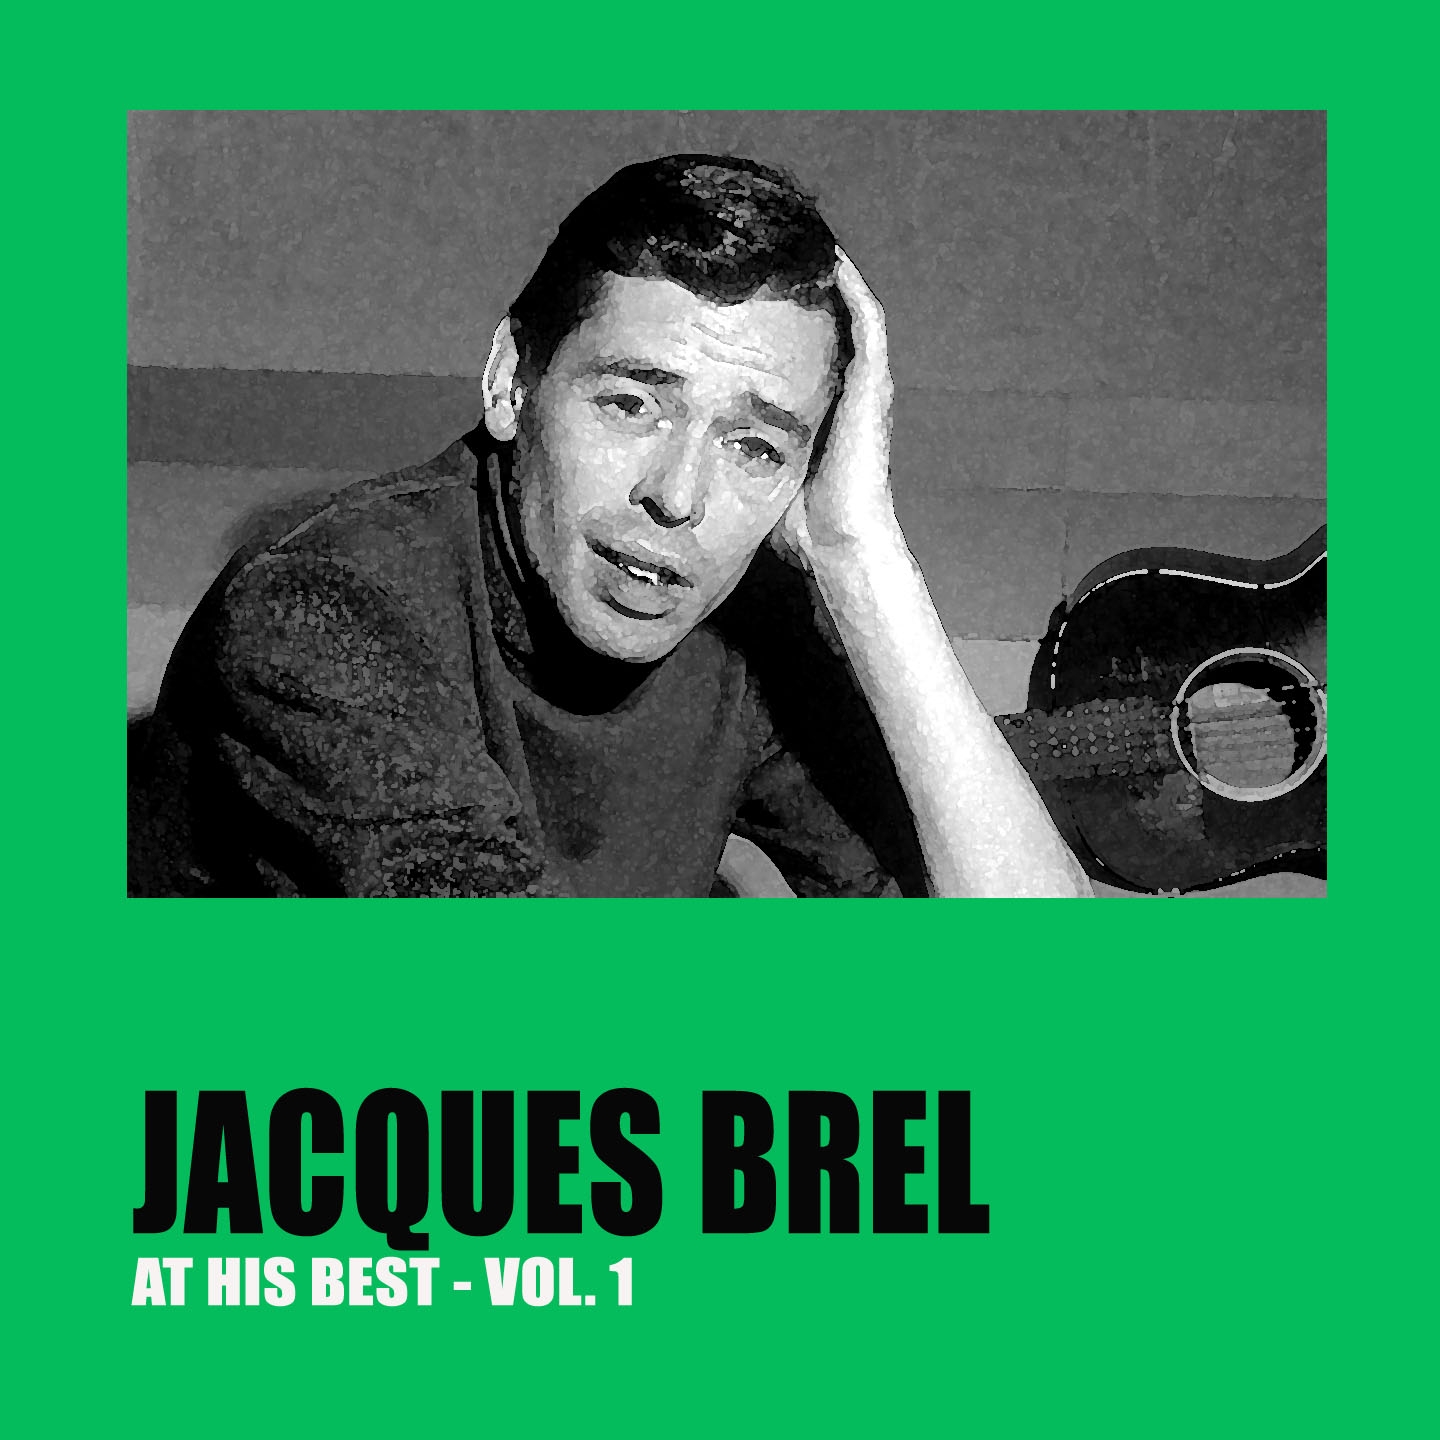 Jacques Brel at His Best Vol. 1